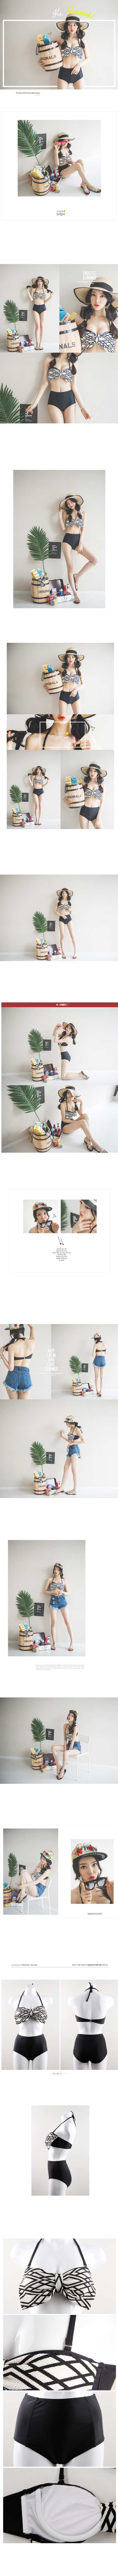 淘宝美工华丽韩版 内衣  套装  多色  性感  沙滩作品